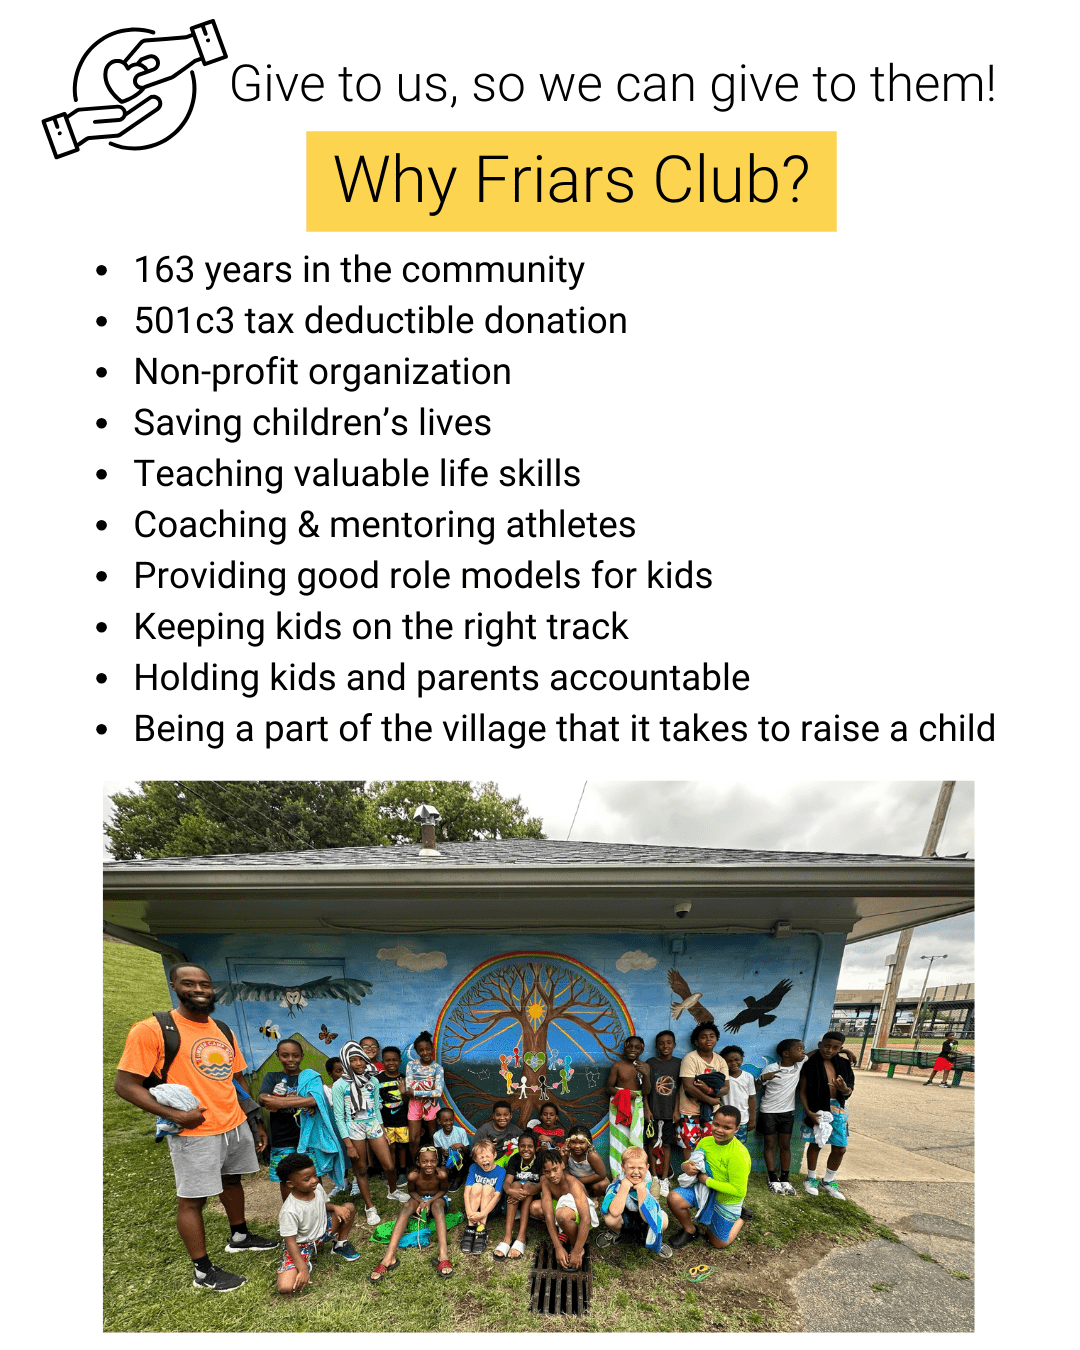 Friars Club Giving Tuesday nov 28 pg 2